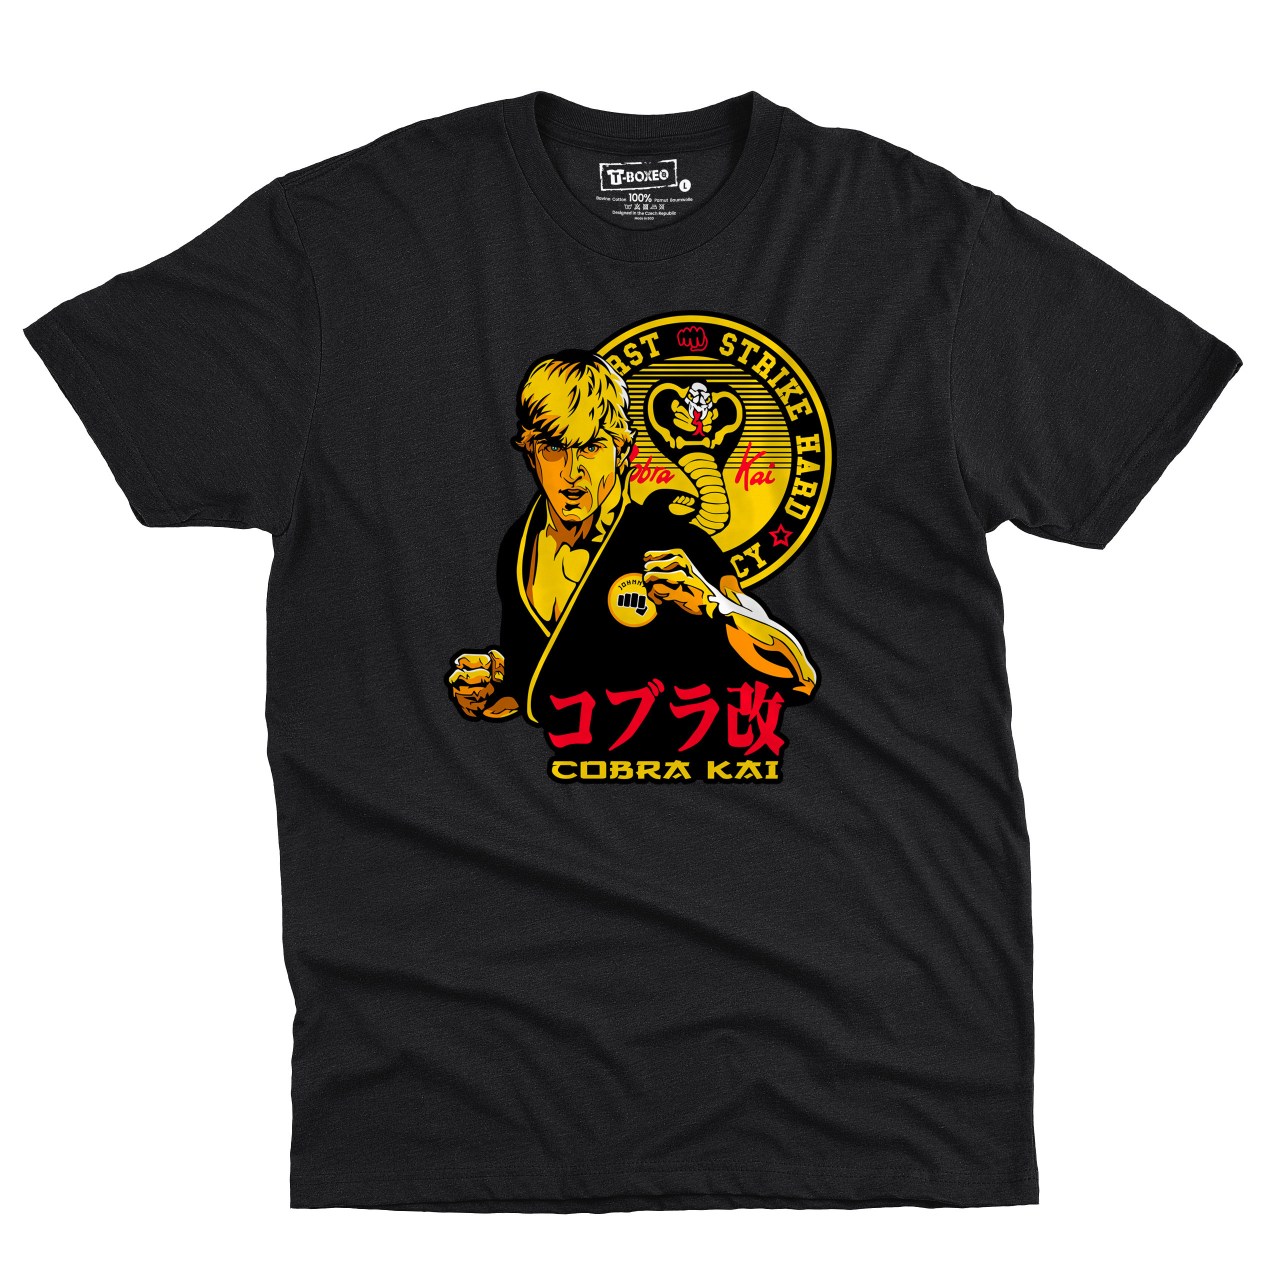 Pánské tričko s potiskem “Cobra Kai"